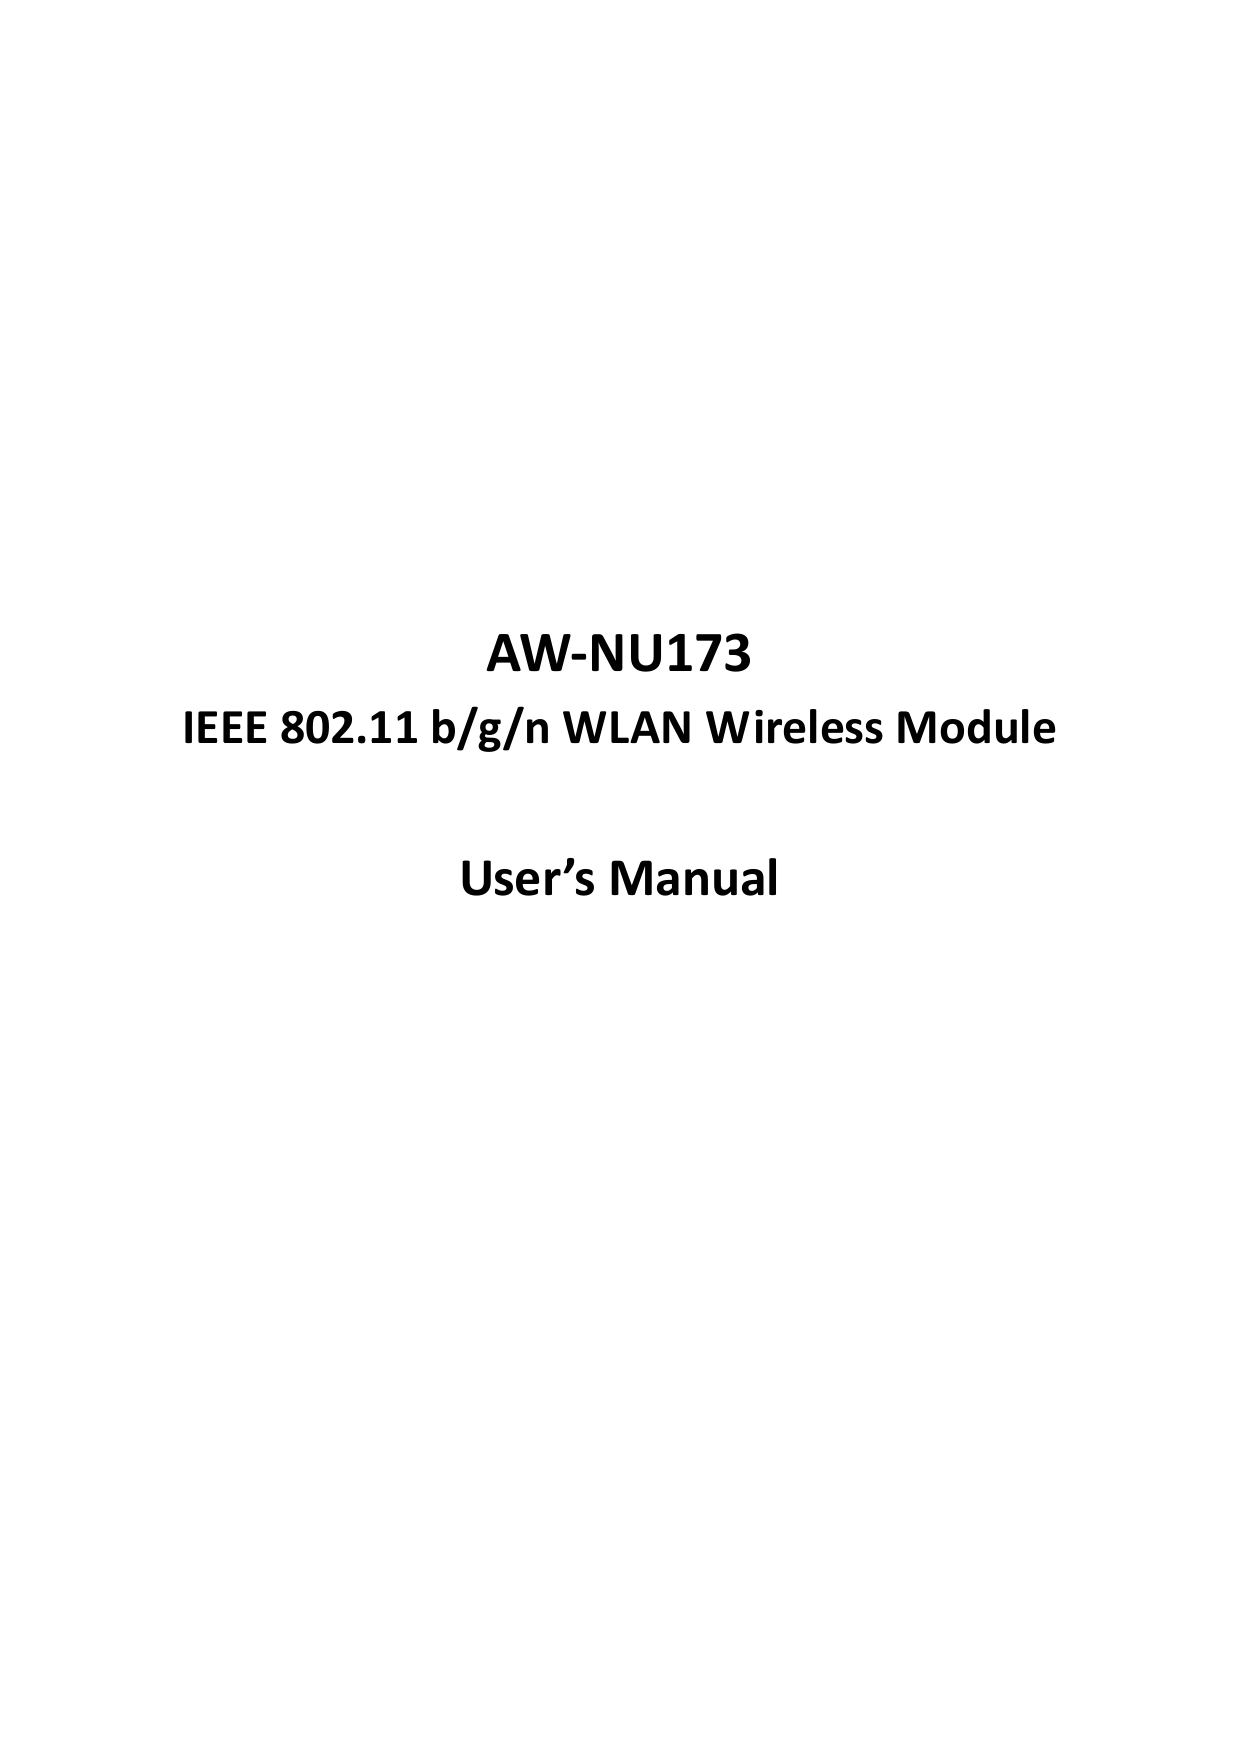              AW-NU173 IEEE 802.11 b/g/n WLAN Wireless Module  User’s Manual                  